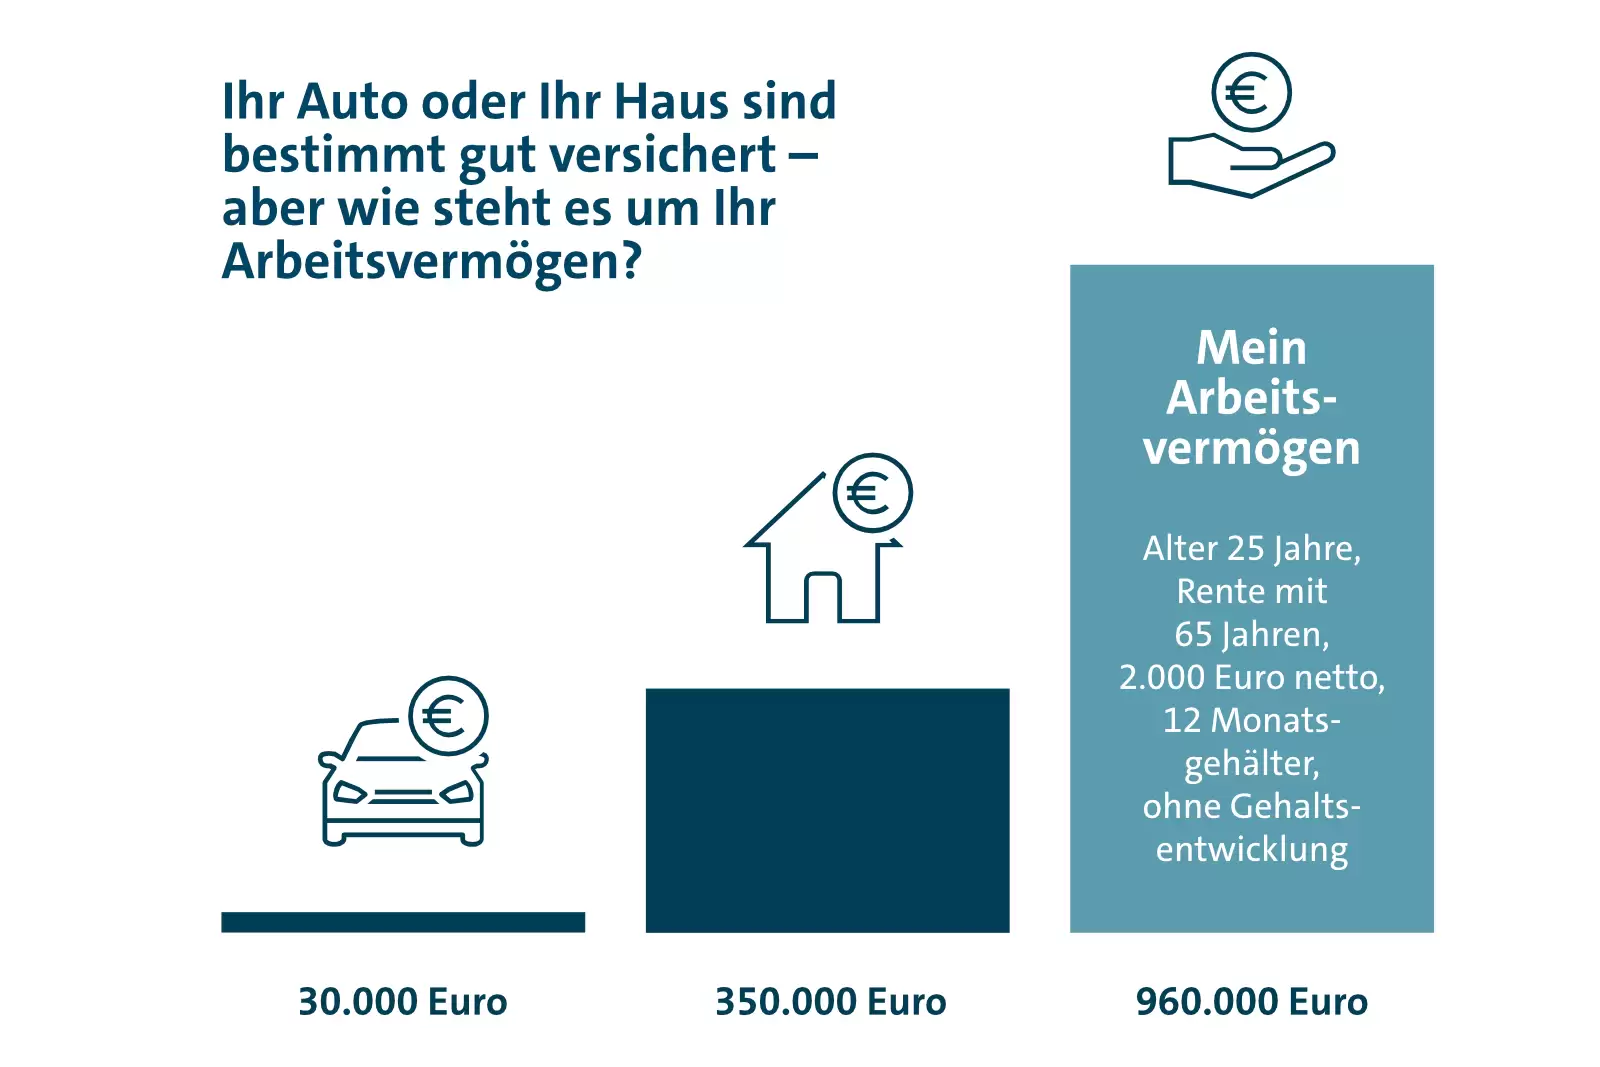 Wertevergleich für das Arbeitsvermögen von 30.000 Euro bis 960.000 Euro 